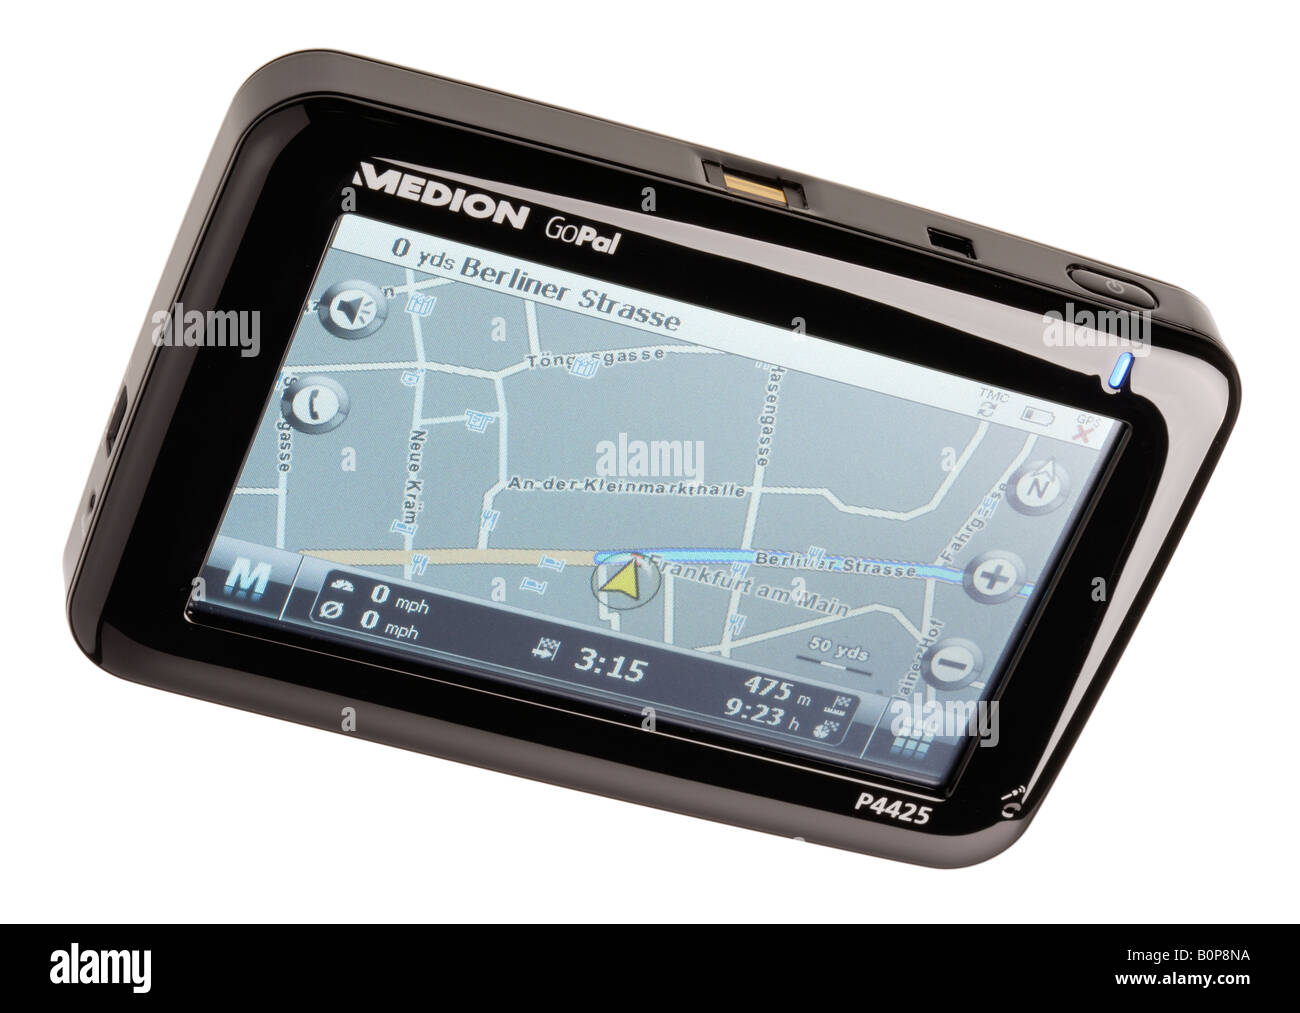 Medion Go pal aide à la navigation par satellite Banque D'Images